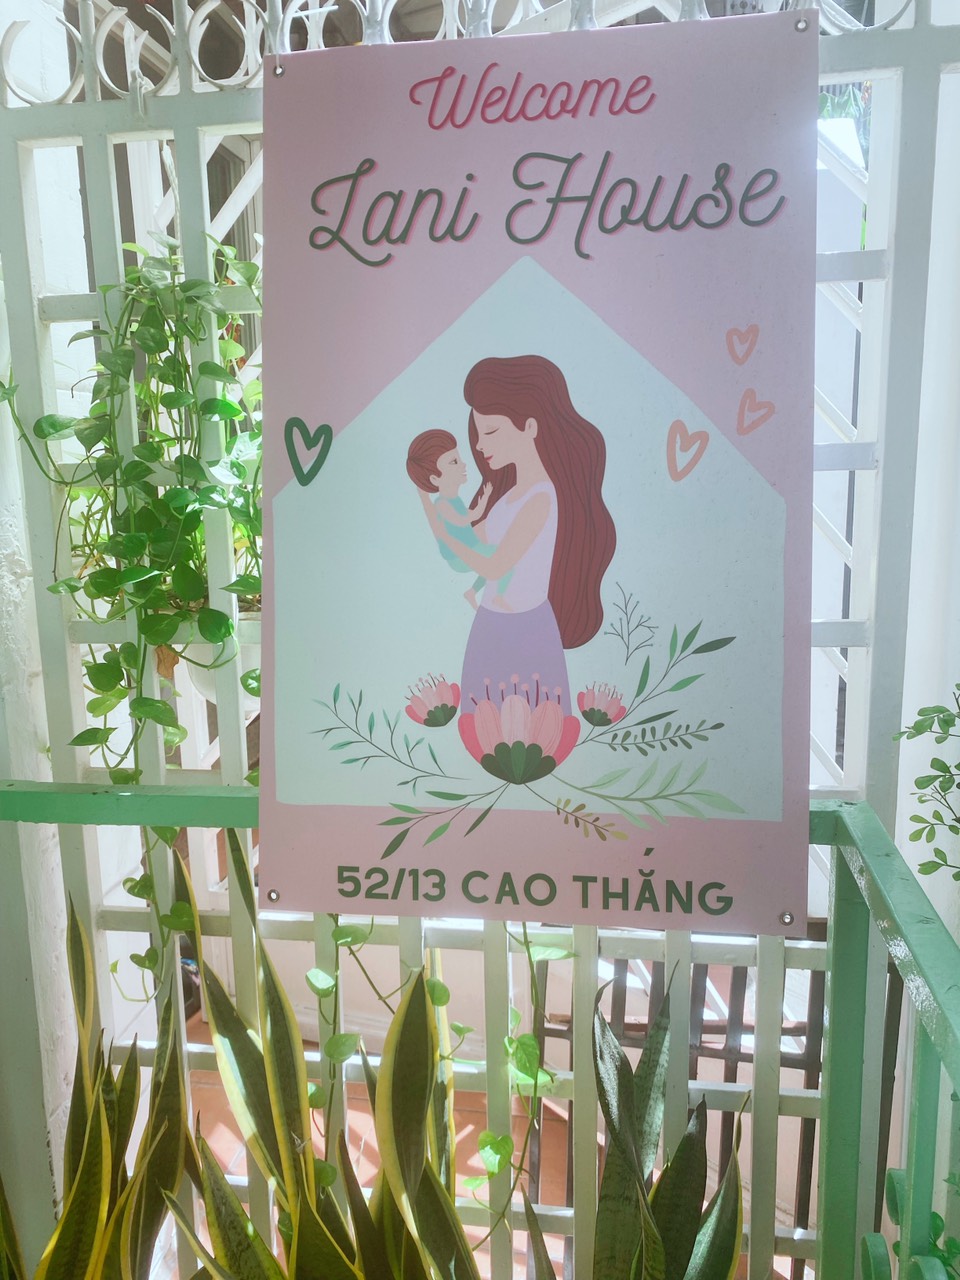 Lani House 52/13 Cao Thắng, Phường 5, Quận 3, TP Hồ Chí Minh Tel: 0903132166